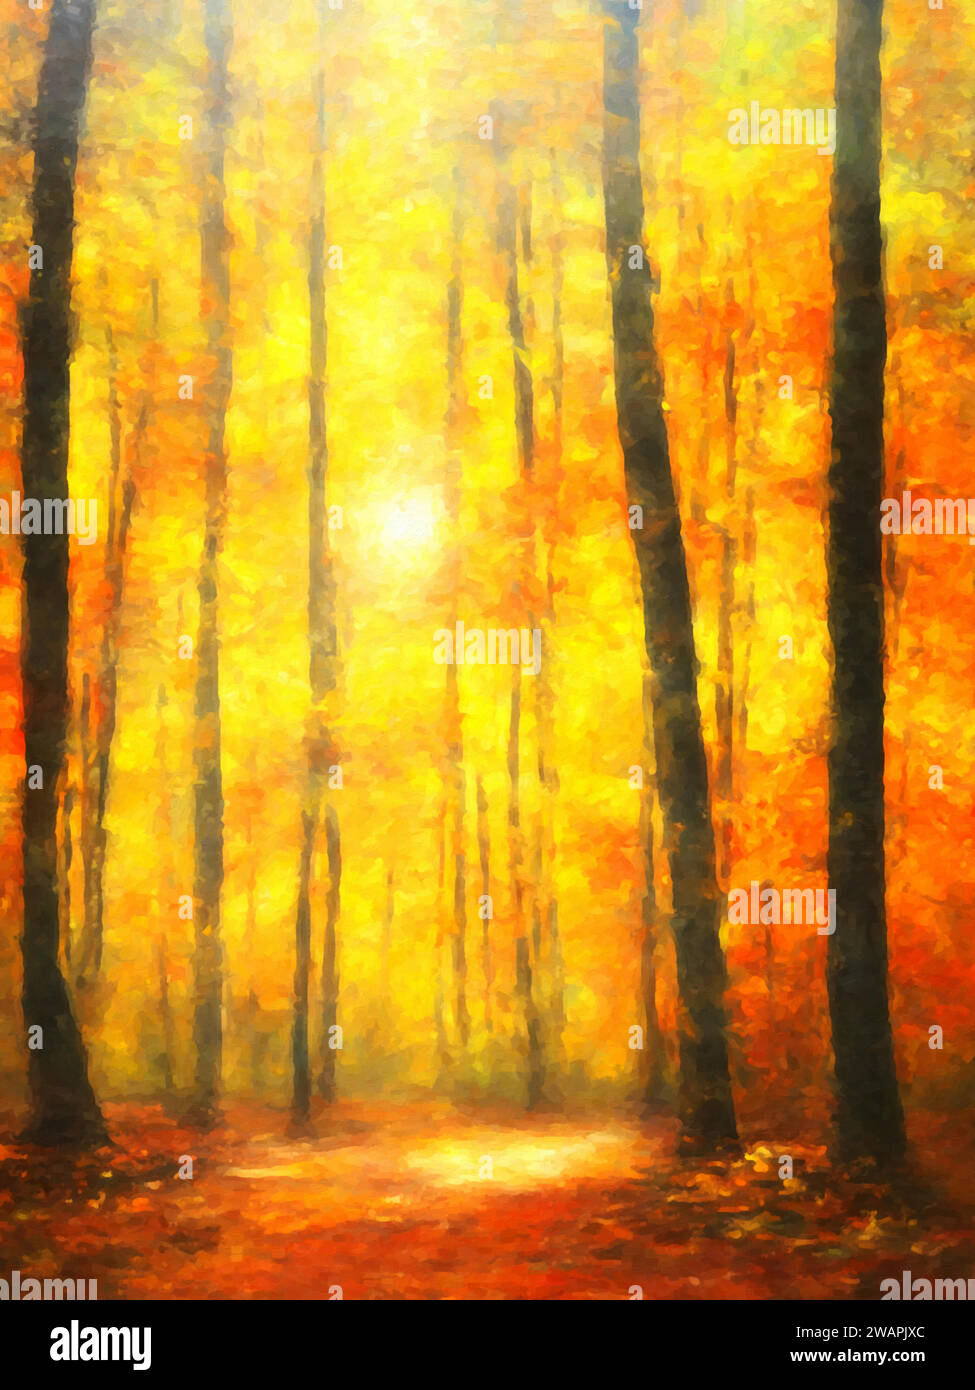 Licht und Schatten (Waldszene)“ – Ein Gemälde, das das Zusammenspiel von Licht und Schatten zwischen Bäumen und Laub eines Waldes einfängt. Stock Vektor